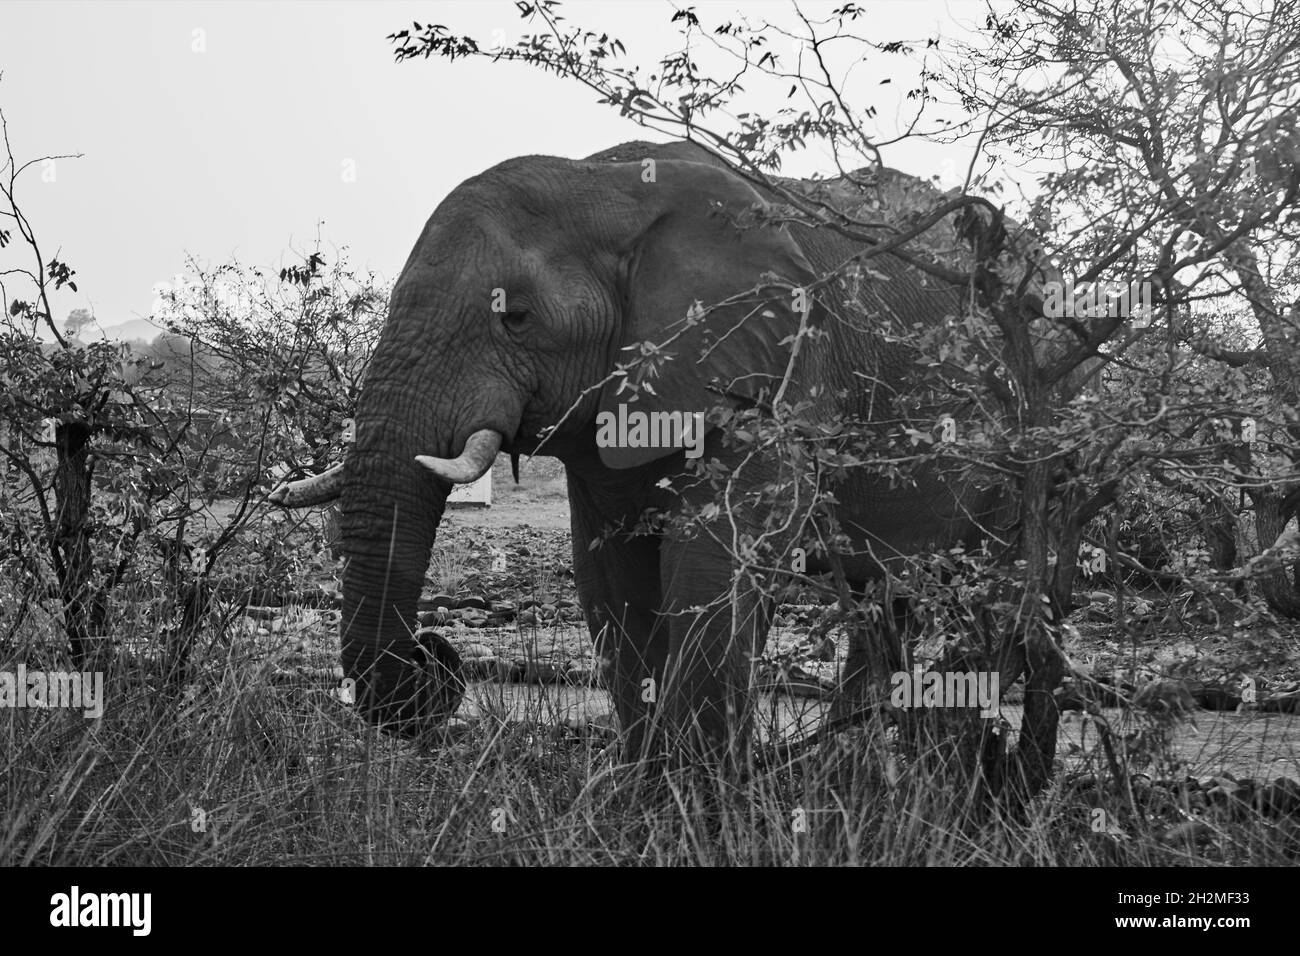 Vue latérale d'un éléphant sauvage (Loxodonta africana) dans le Bush africain, Namibie. Banque D'Images